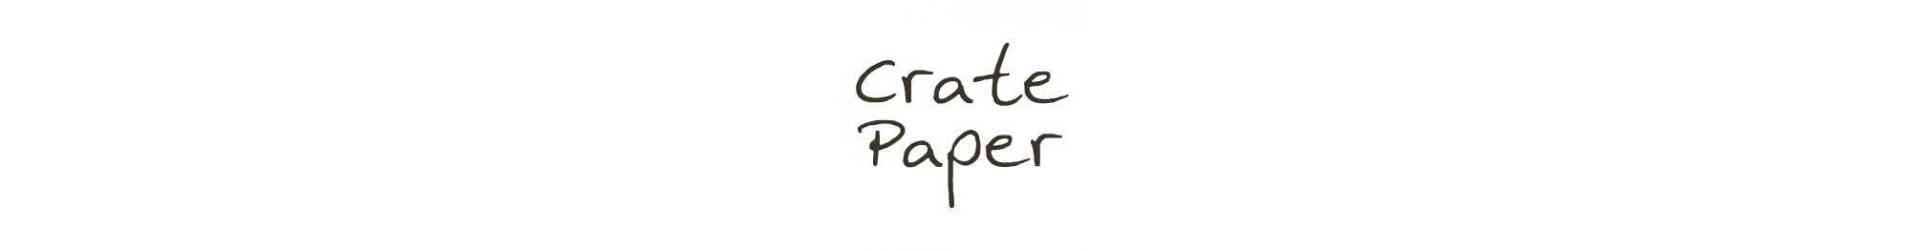 Crate Paper